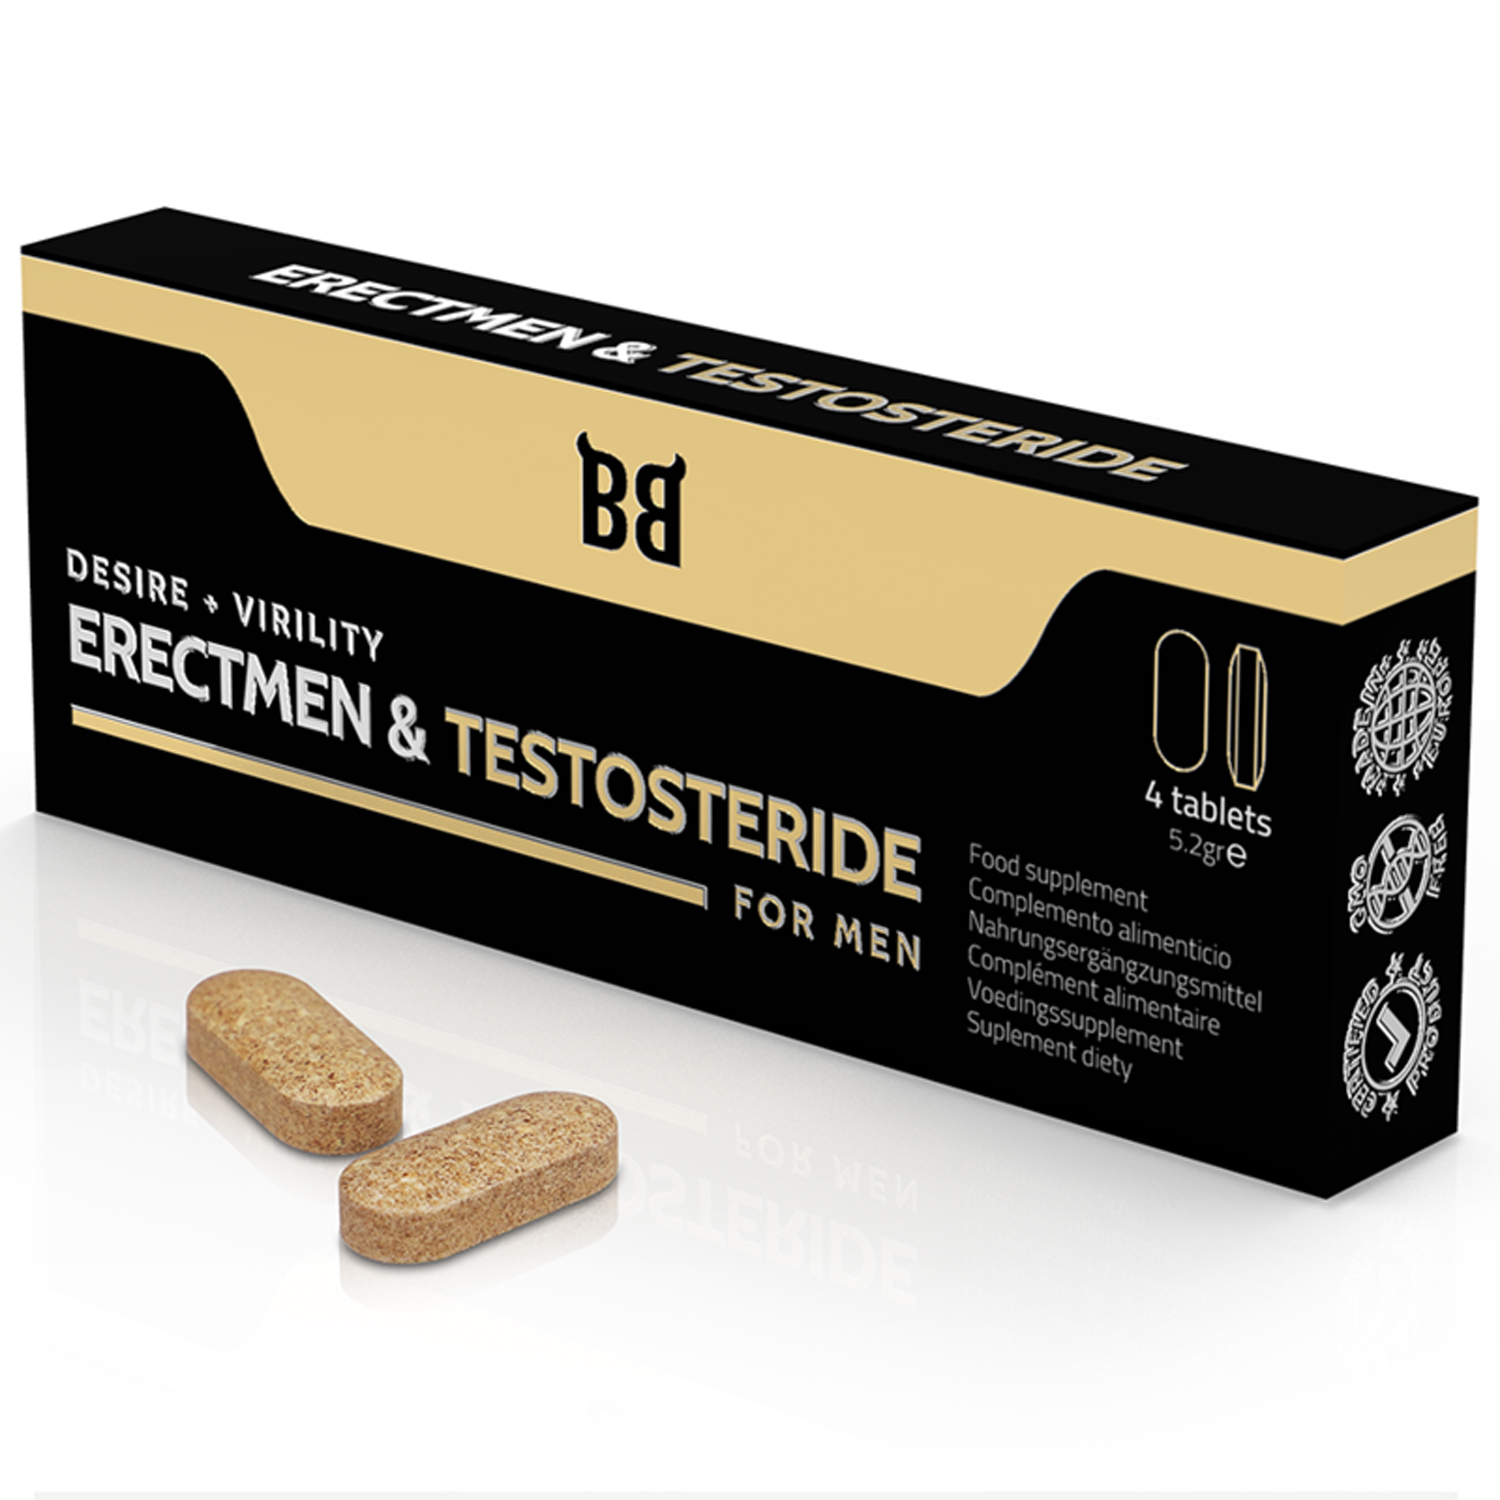 Erectmen & Testosteride Power - Ökar Virilitet och Testosteron - Kosttillskott för män - 4 tabletter